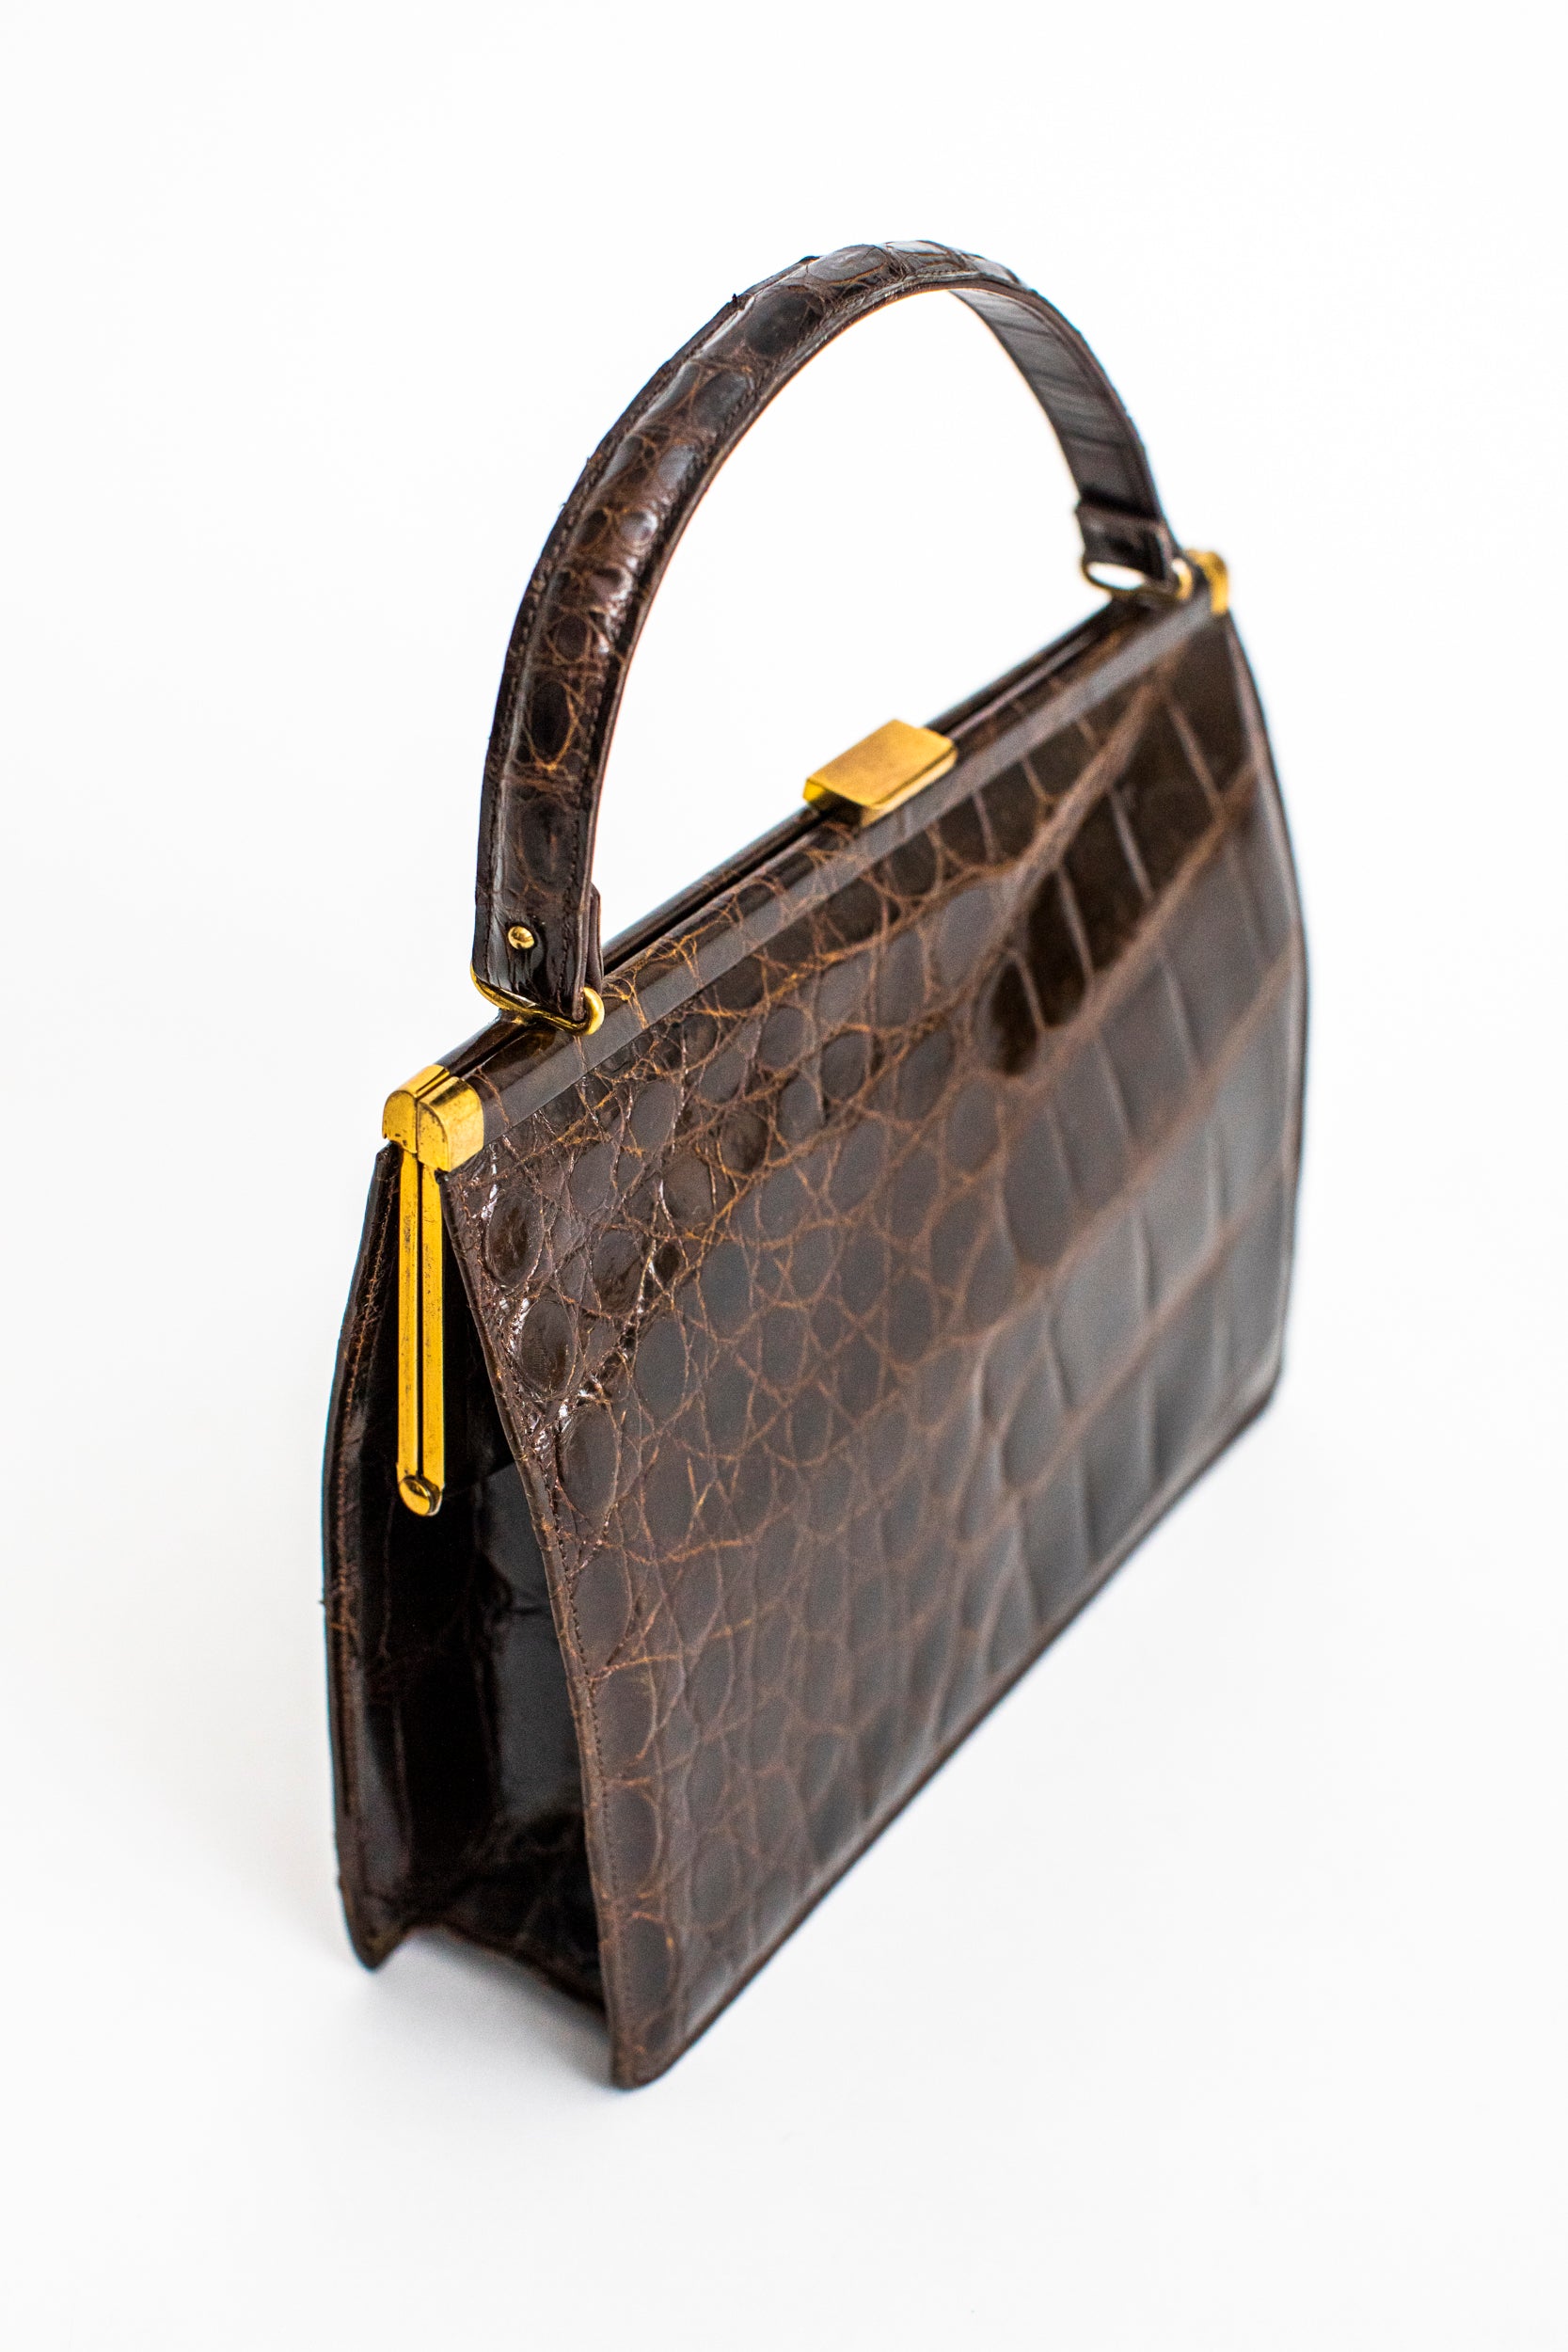 Tobacco color crocodile skin handbag with double handle – Vintage Carwen